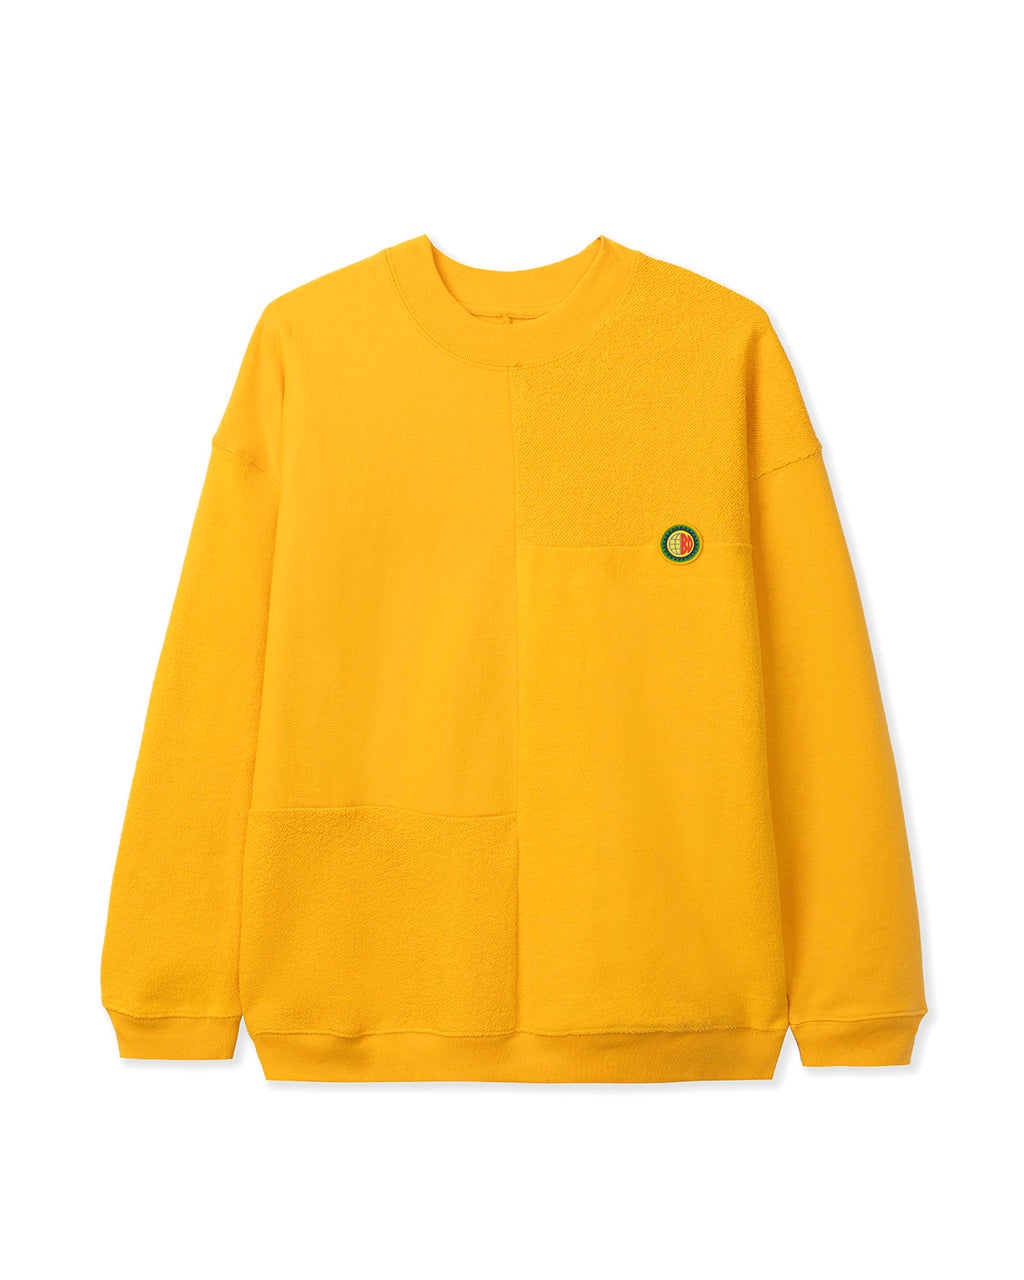 Global Works Split Panel Fleece & Terry Crewneck Sweatshirt - Yellow 1